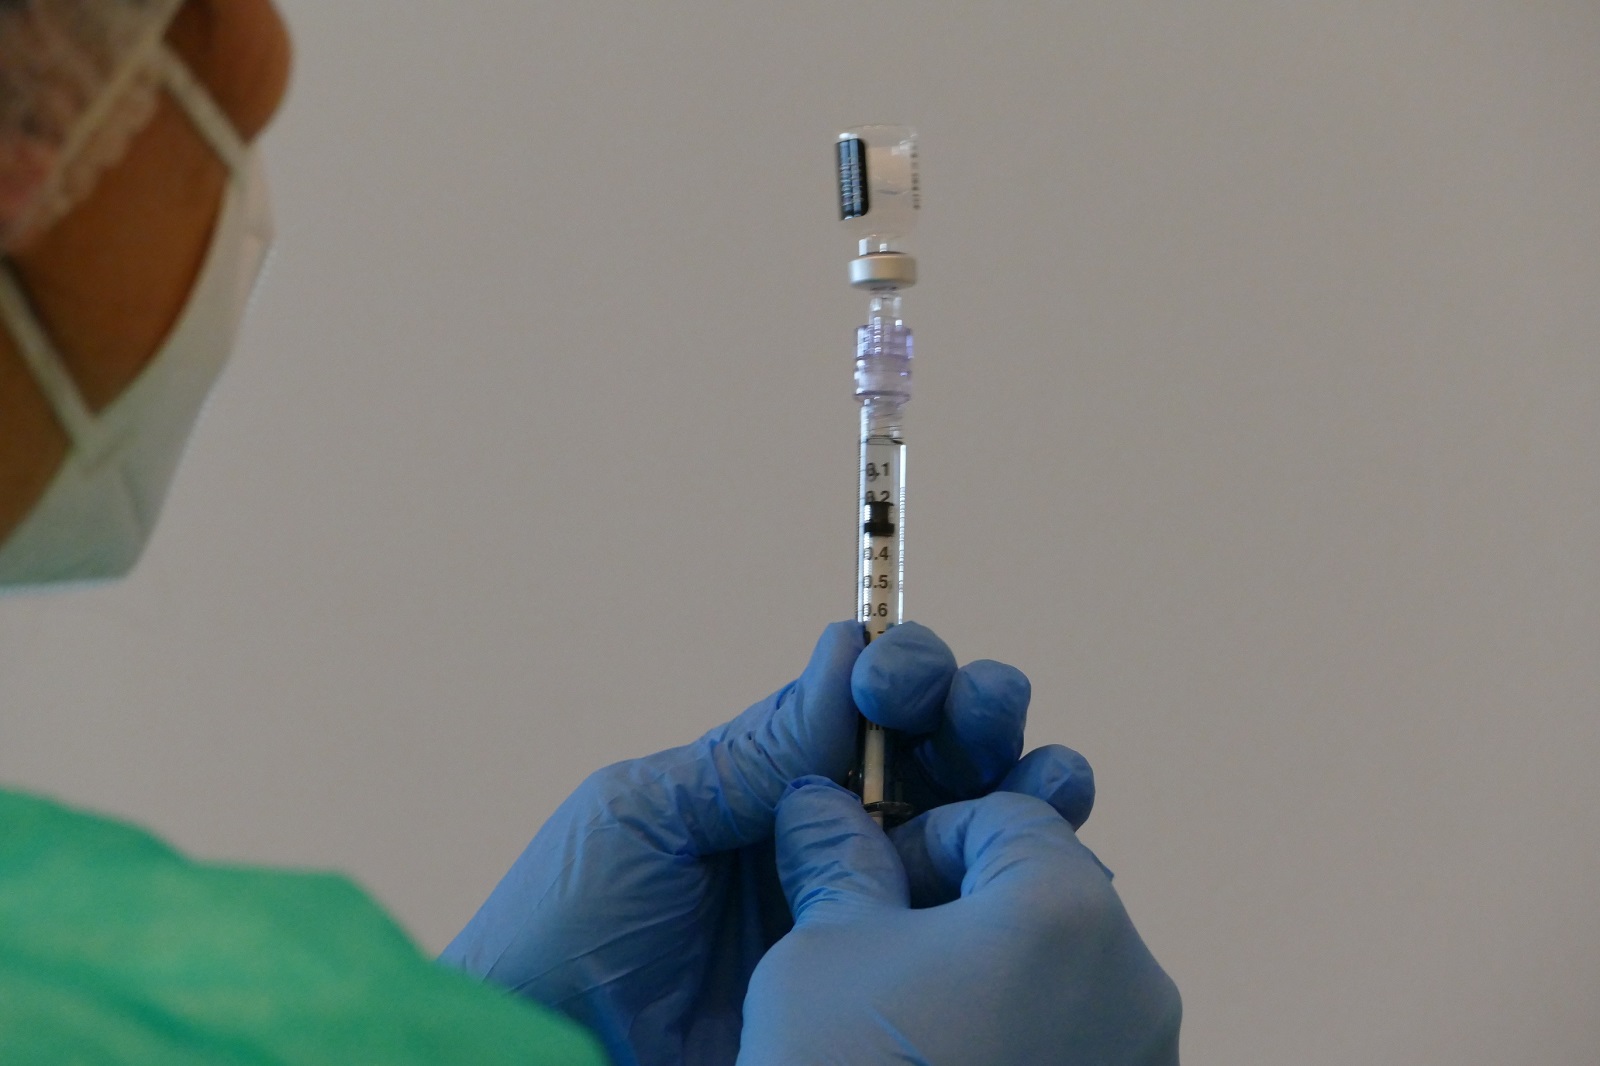  Vaccinazioni anti-covid 19: i Medici di medicina generale accanto all’Azienda USL nella campagna contro il virus